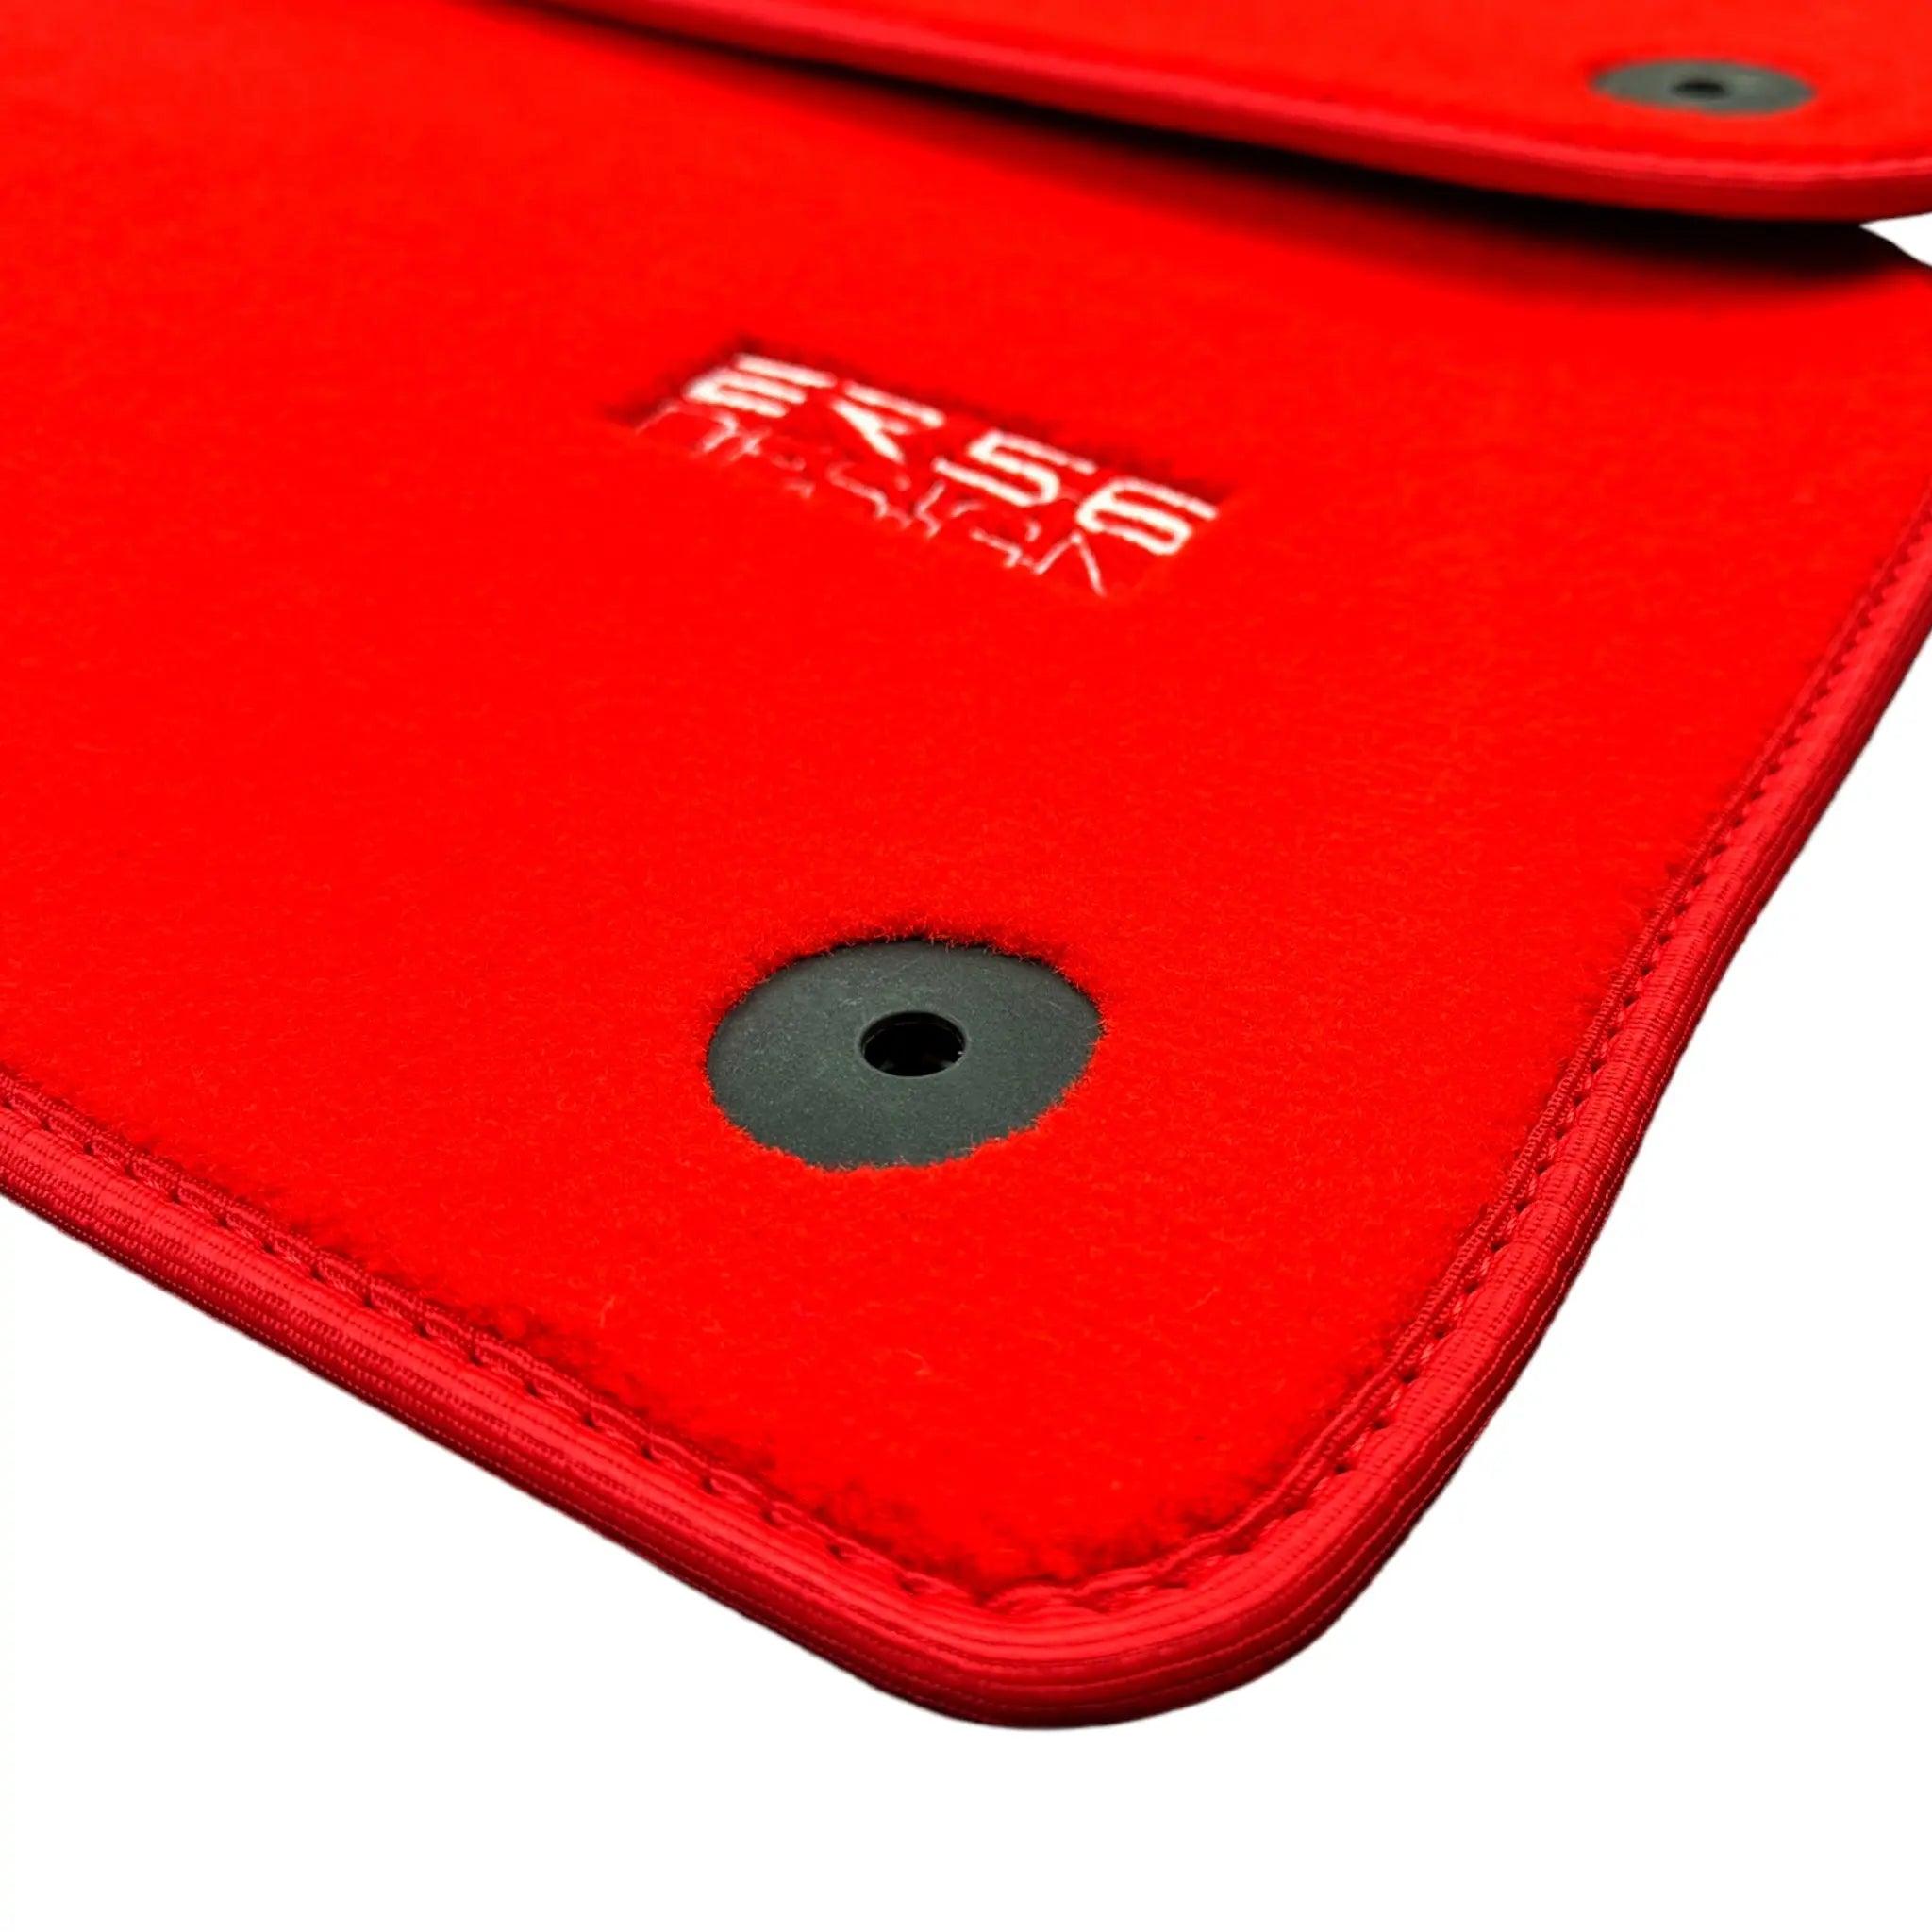 Red Floor Mats for Audi Q8 e-tron Sportback (2023-2025) | ER56 Design